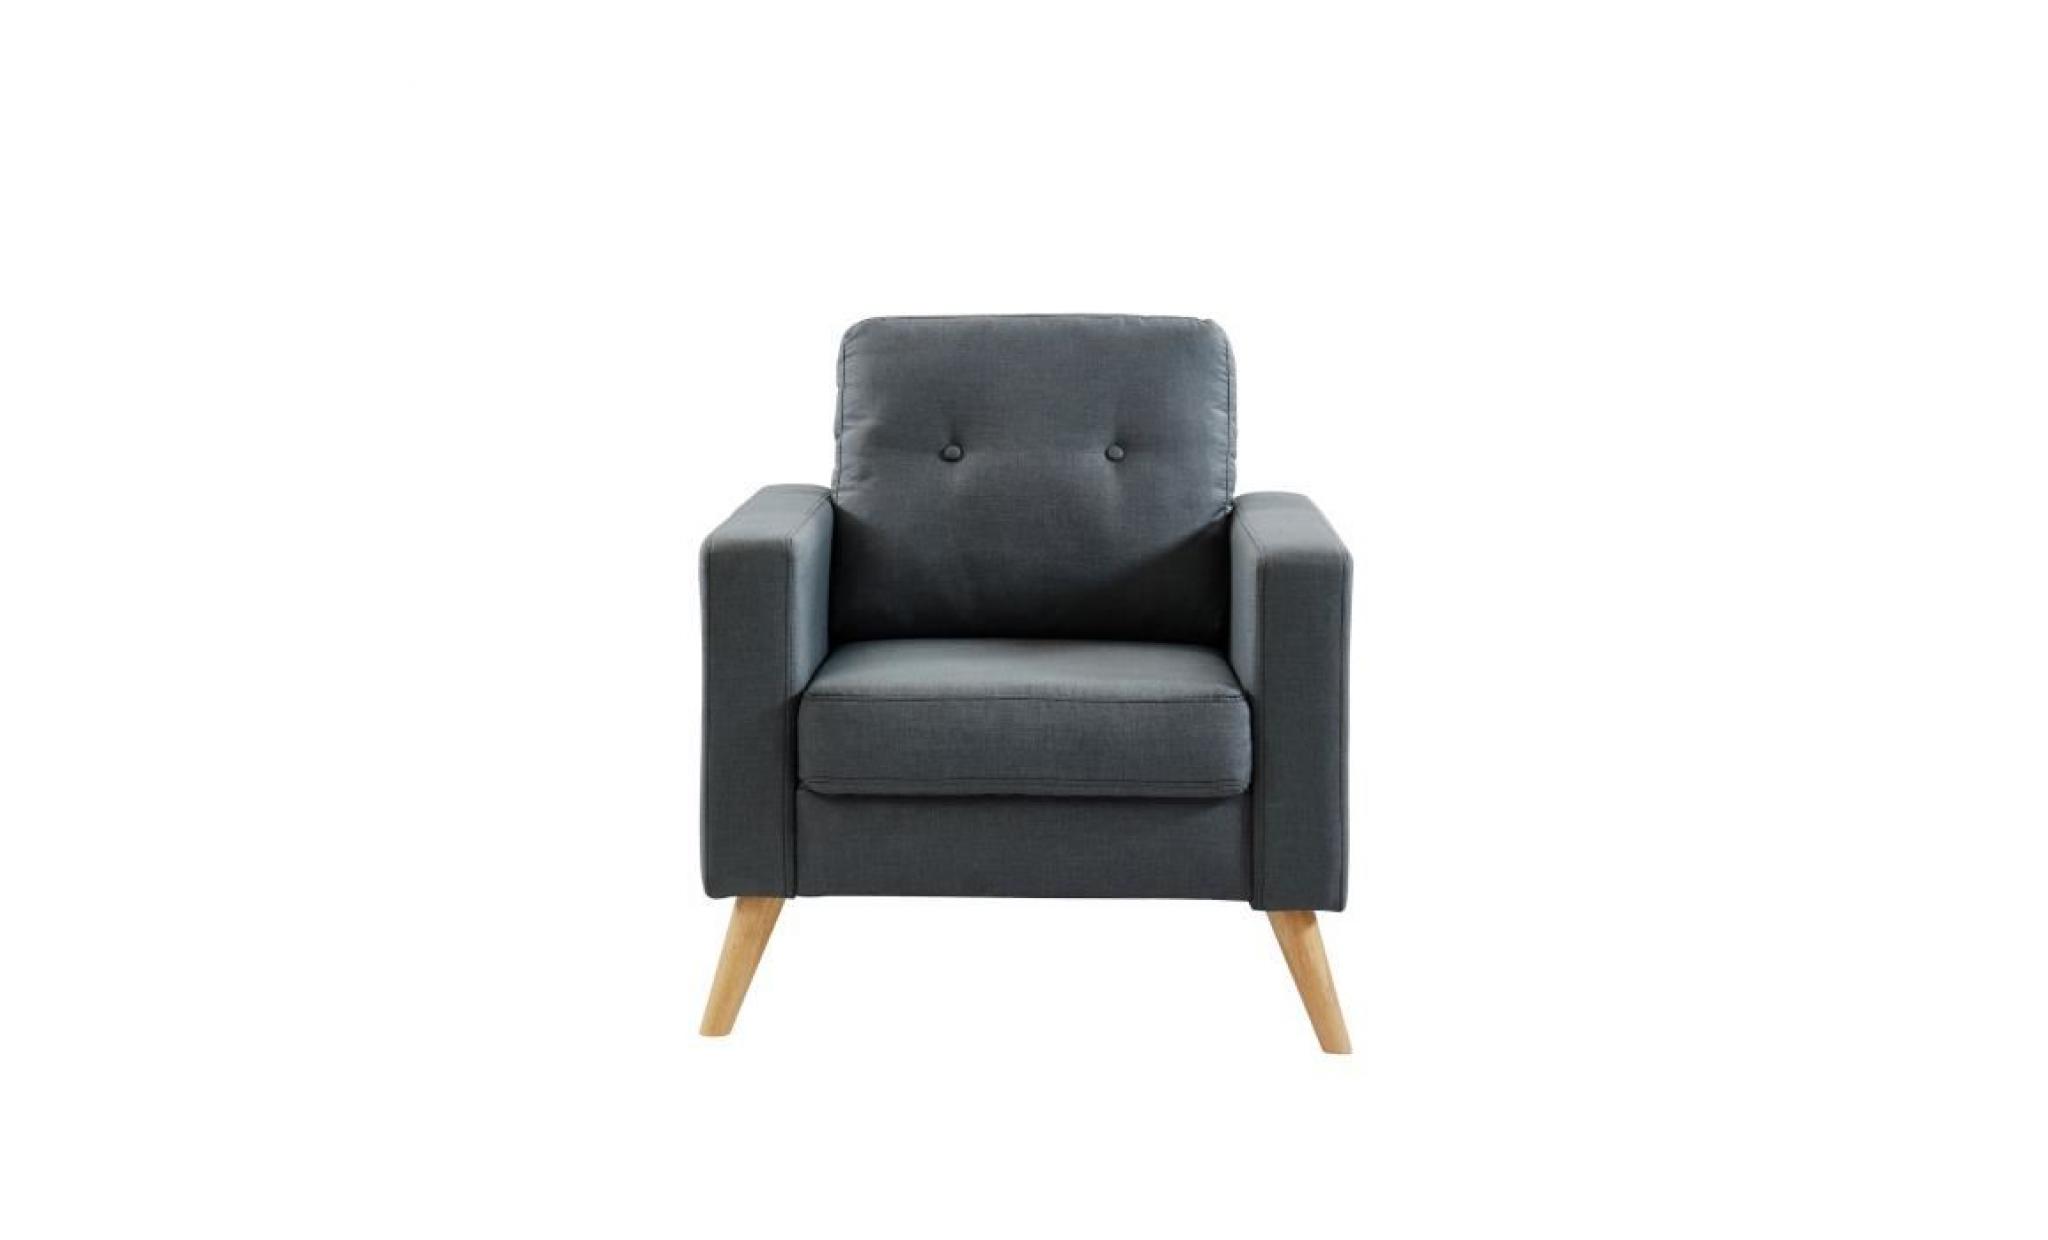 ibra fauteuil   tissu gris   scandinave   l 80 x p 83 cm